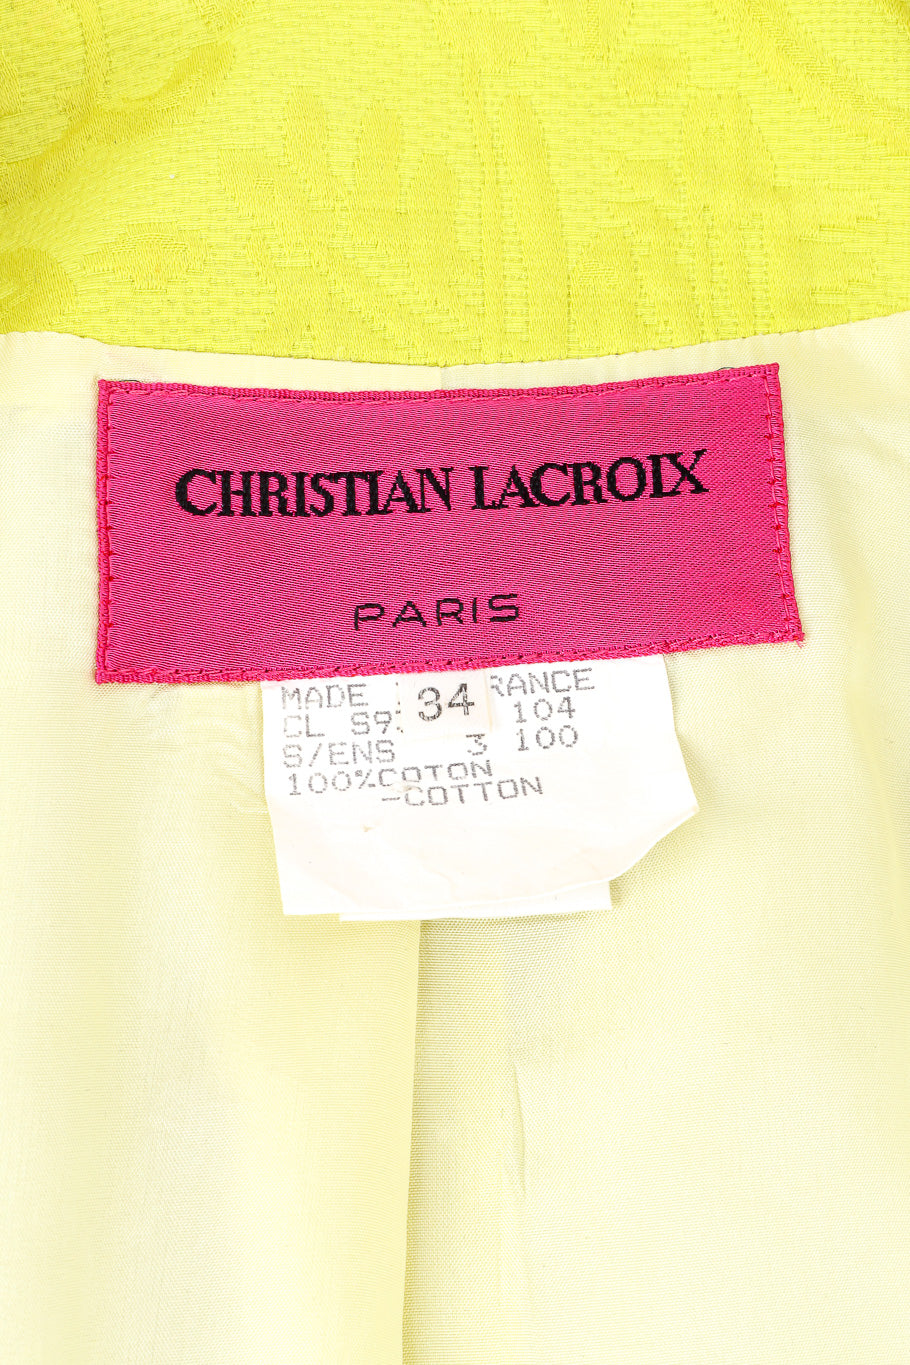 Vintage Christian Lacroix Appliqué Peplum Jacket & Skirt Set blazer label closeup @Recessla